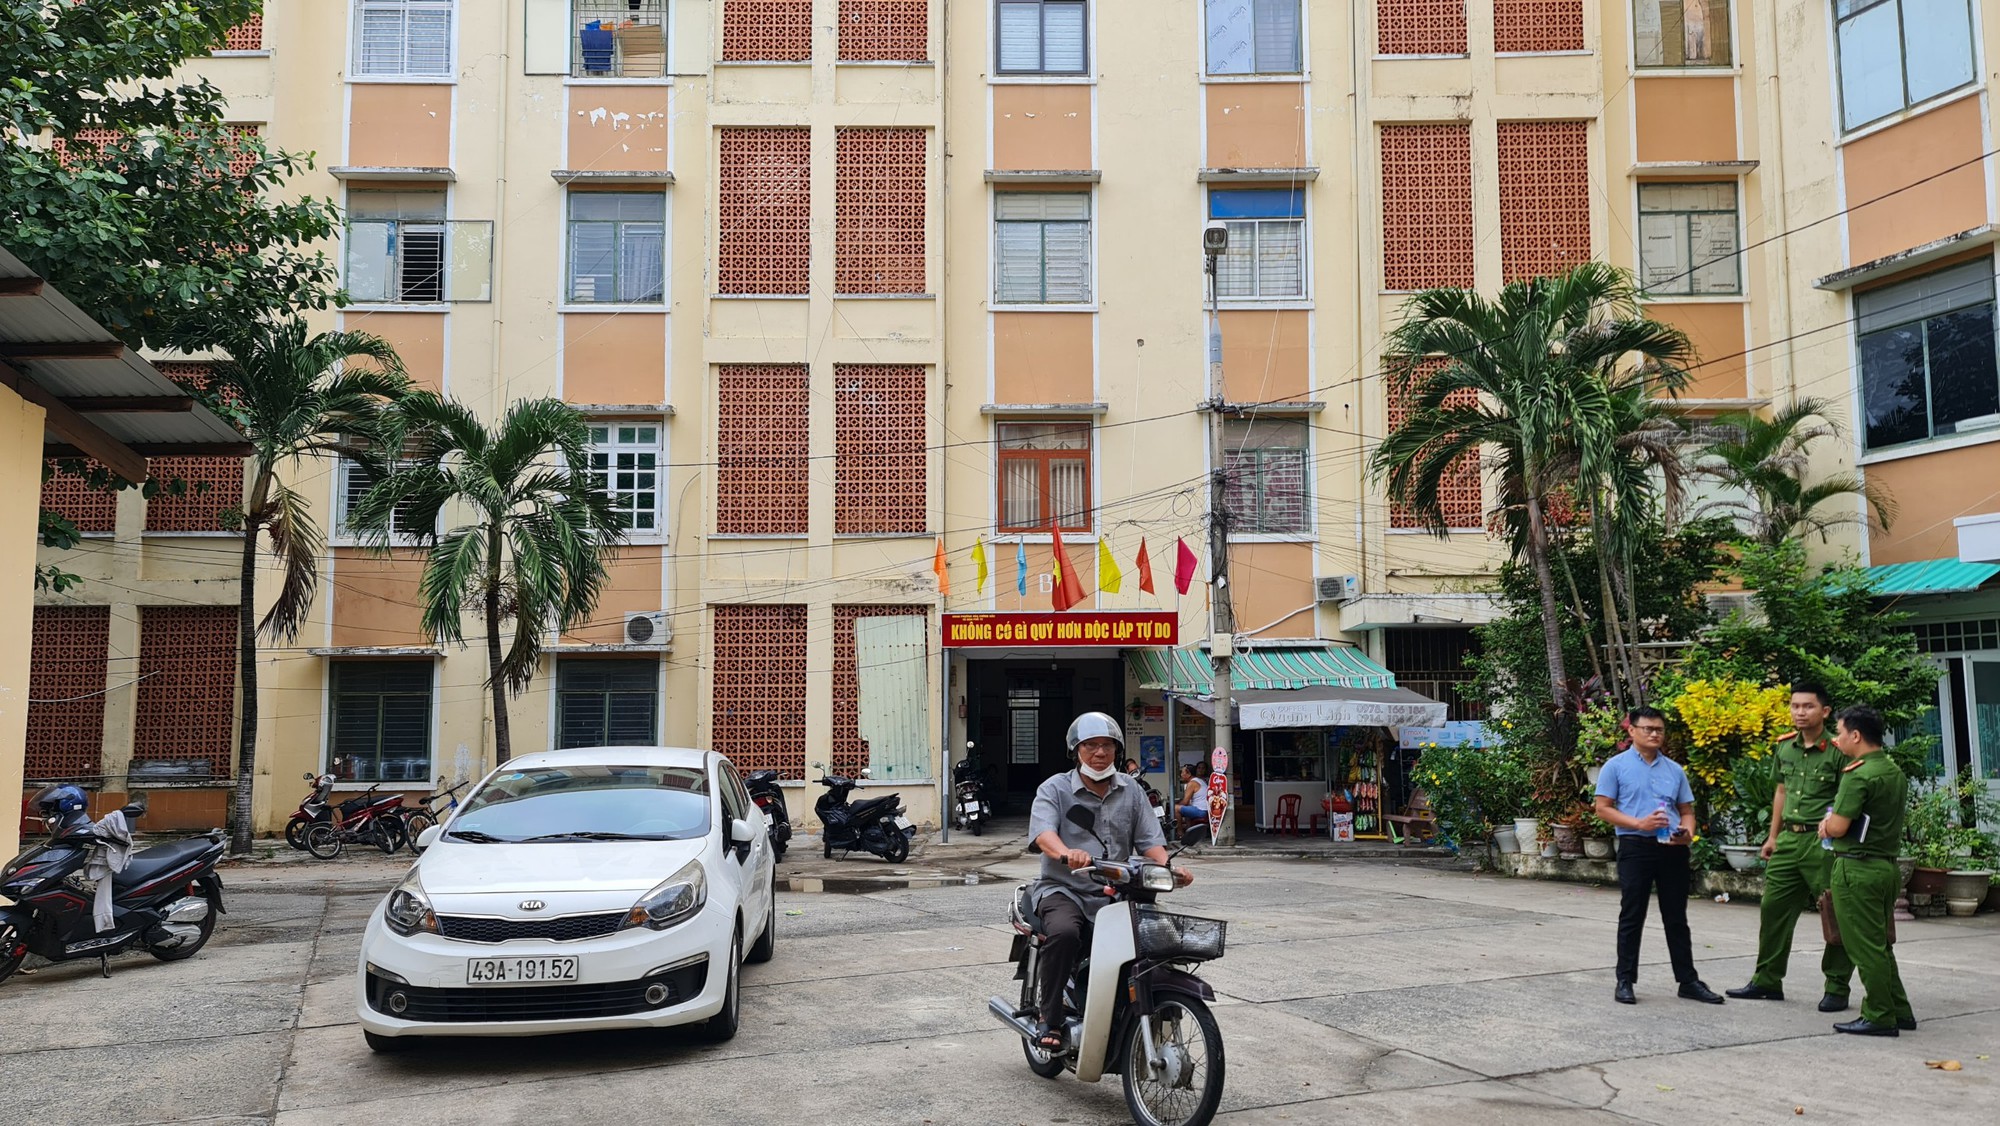 Kiểm tra PCCC của hàng ngàn chung cư, nhà trọ tại Đà Nẵng - Ảnh 1.